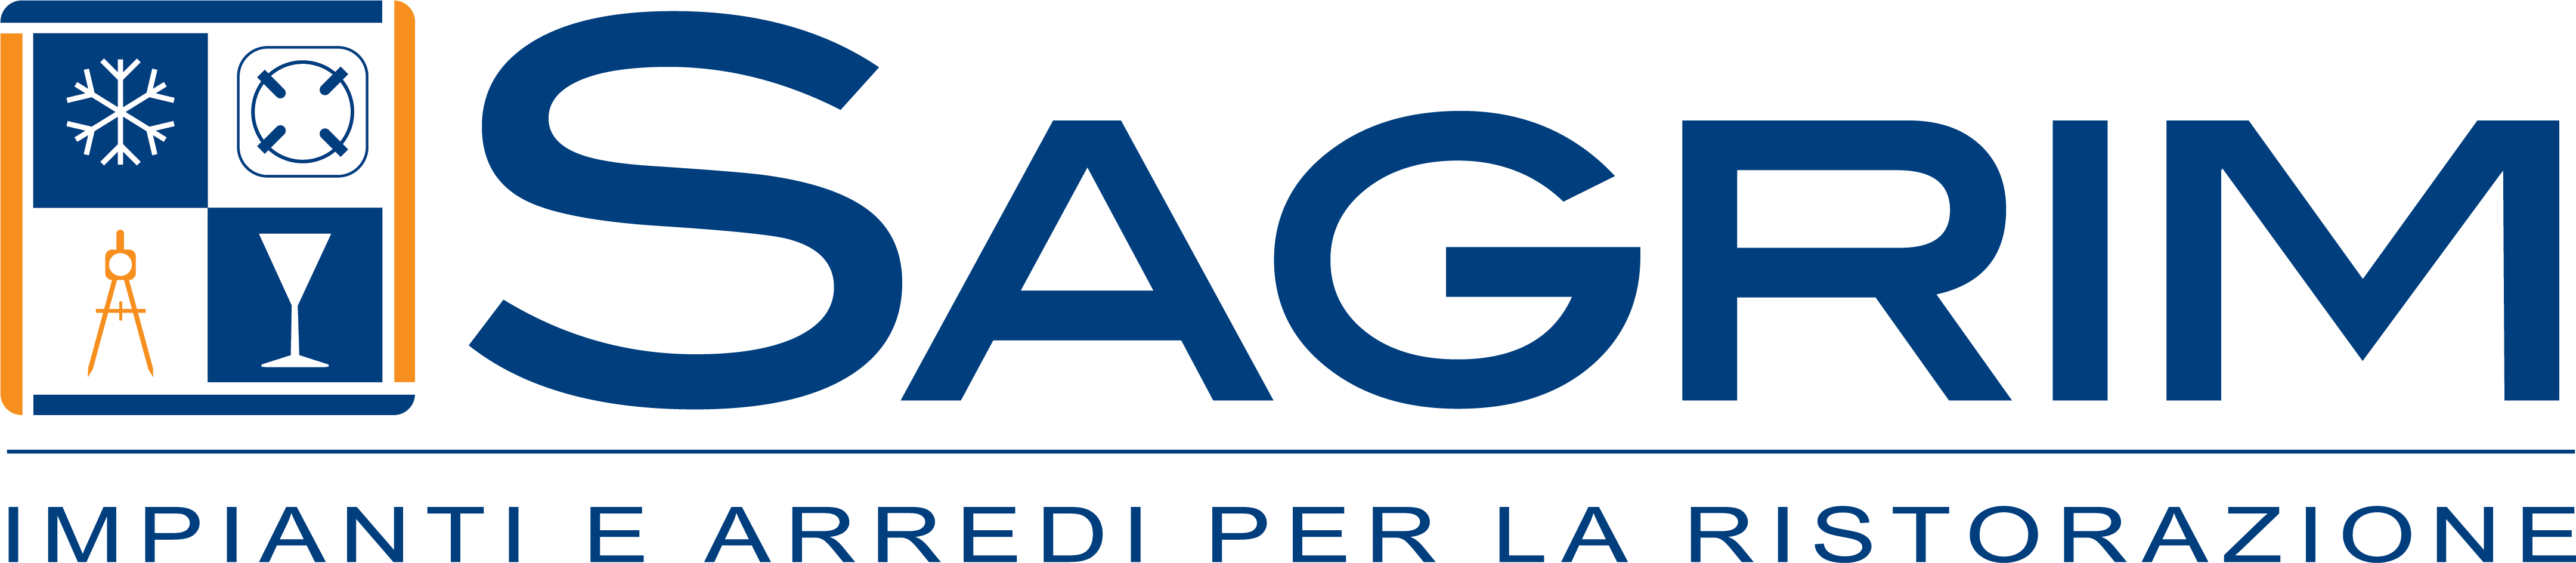 SAGRIM logo